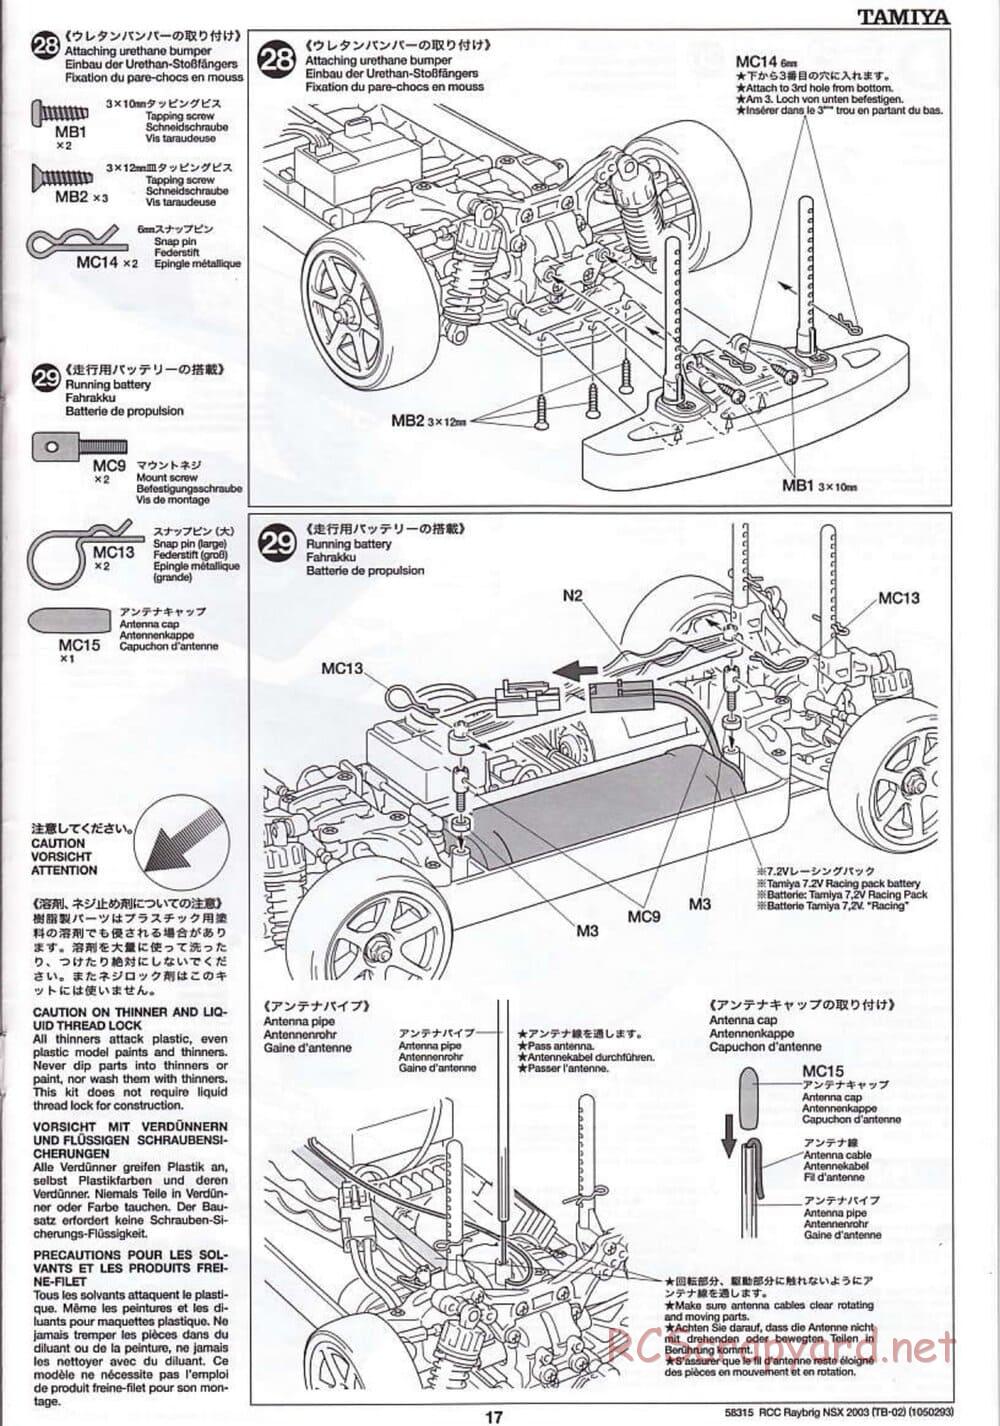 Tamiya - Raybrig NSX 2003 - TB-02 Chassis - Manual - Page 17